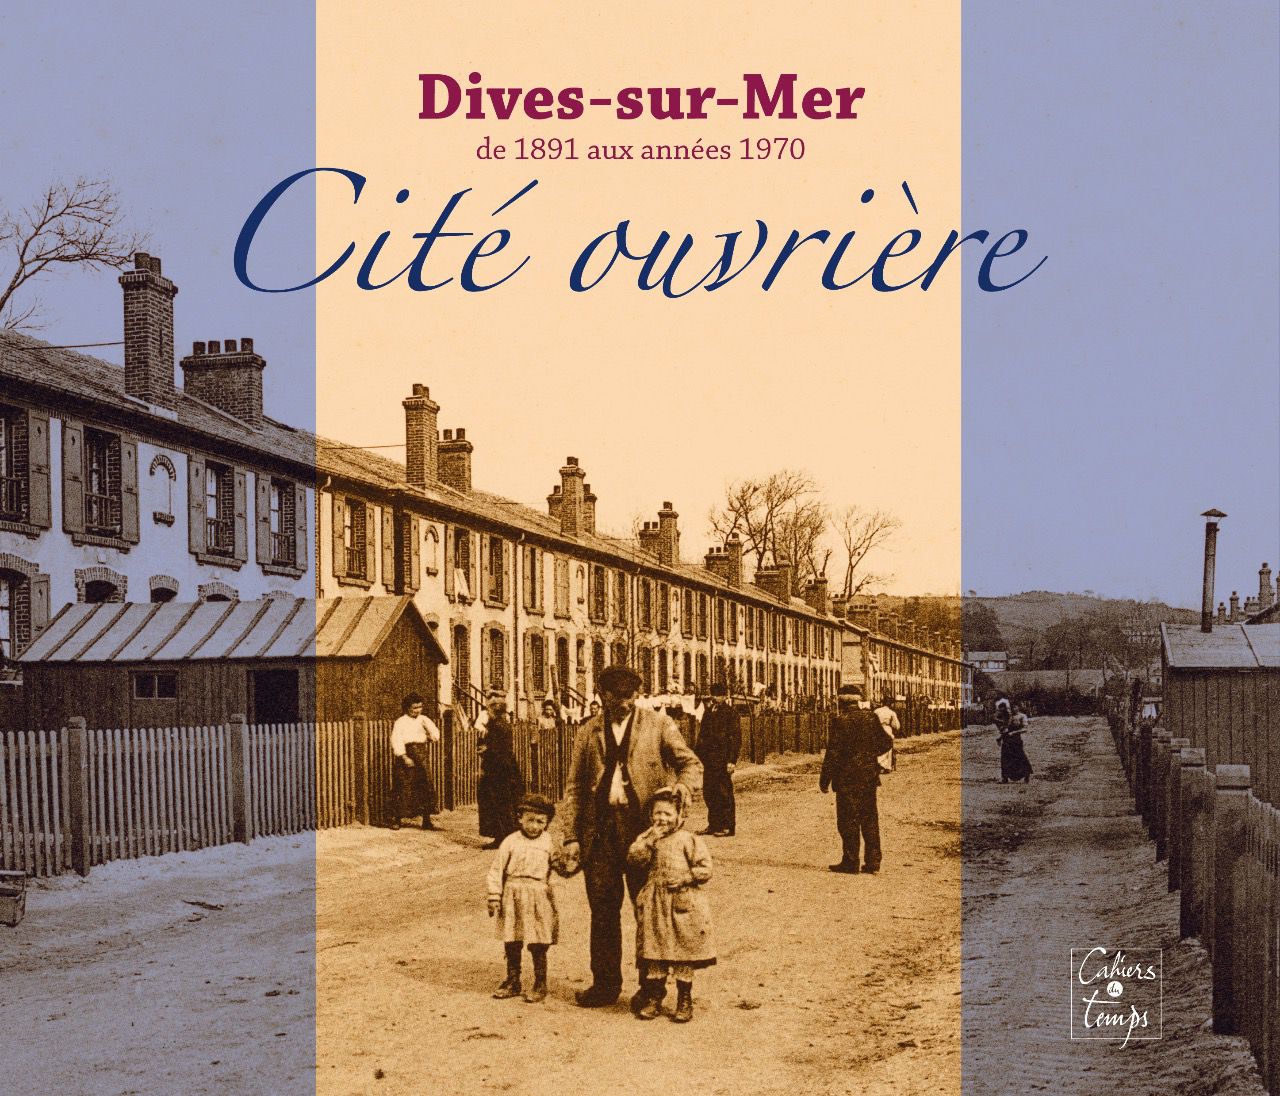 Dives-sur-Mer, Cité ouvrière de 1891 aux années 1970